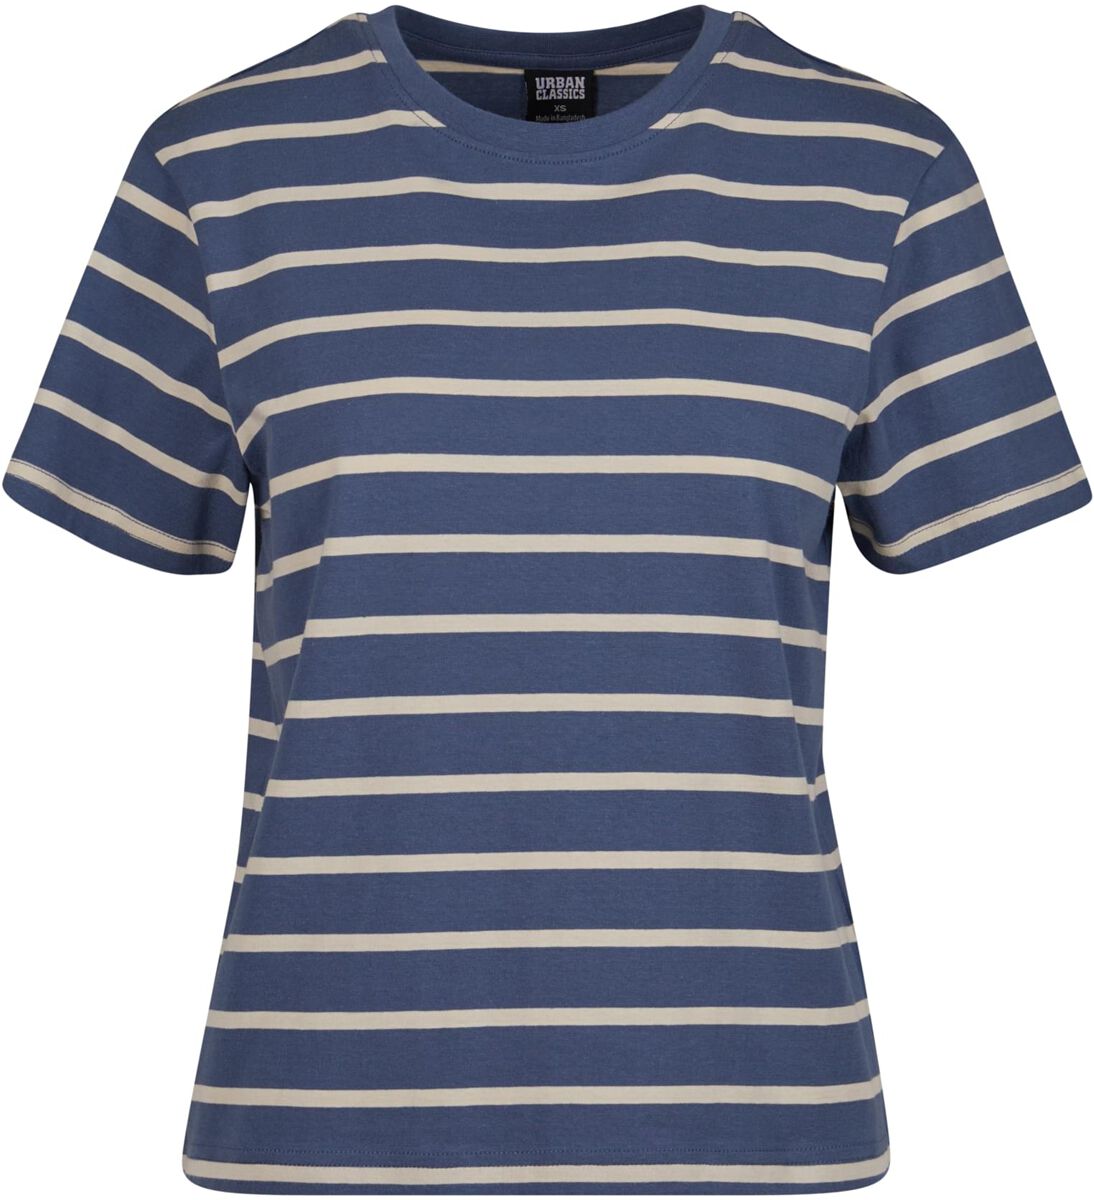 Urban Classics T-Shirt - Ladies Striped Boxy Tee - XS bis 4XL - für Damen - Größe S - blau